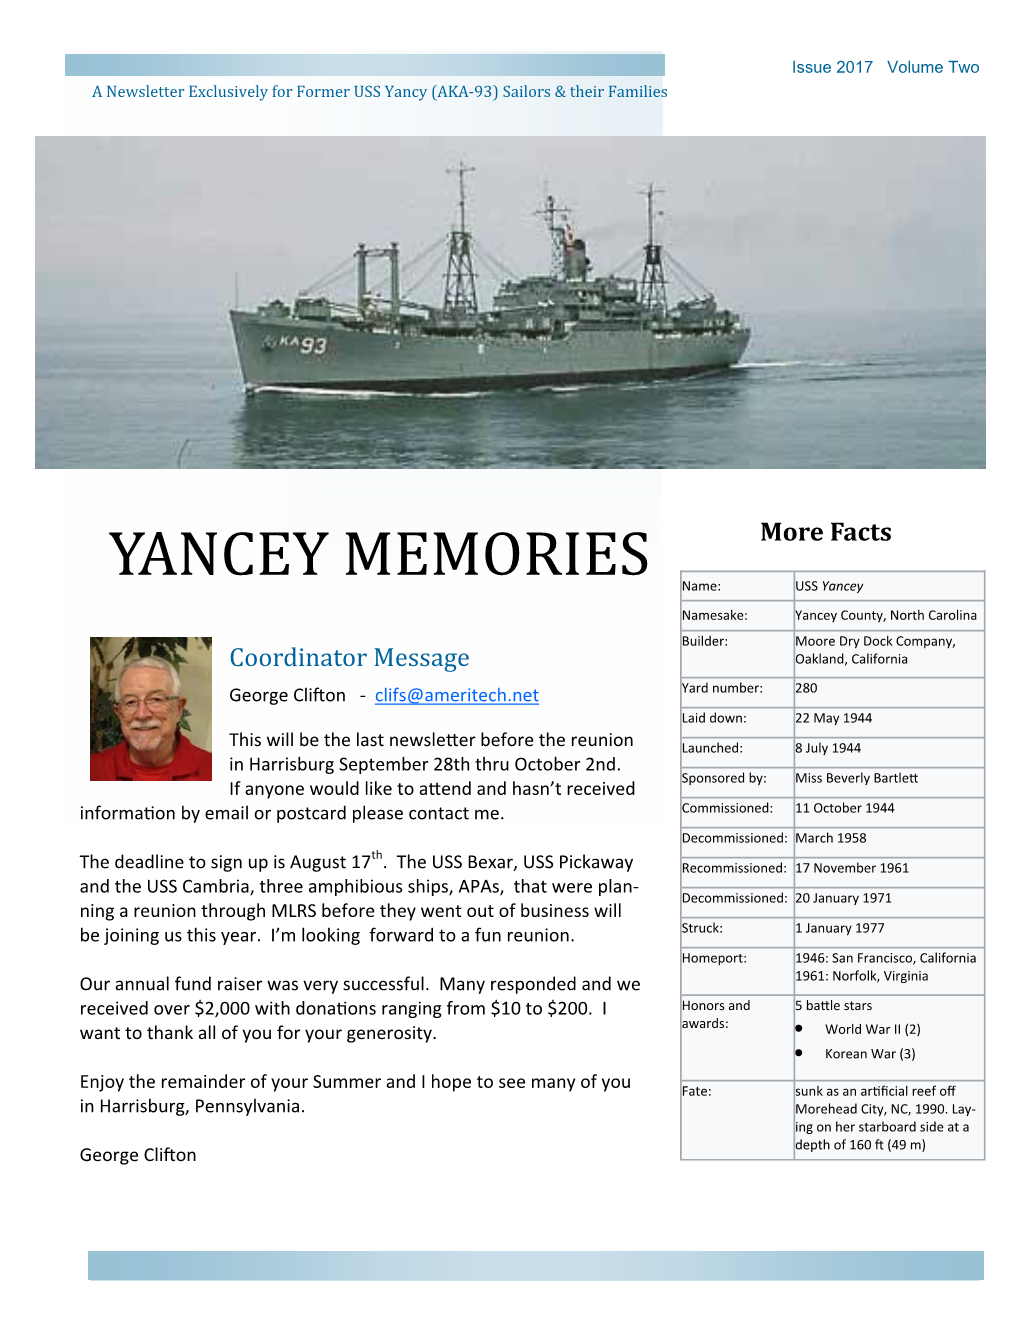 Yancey Memories